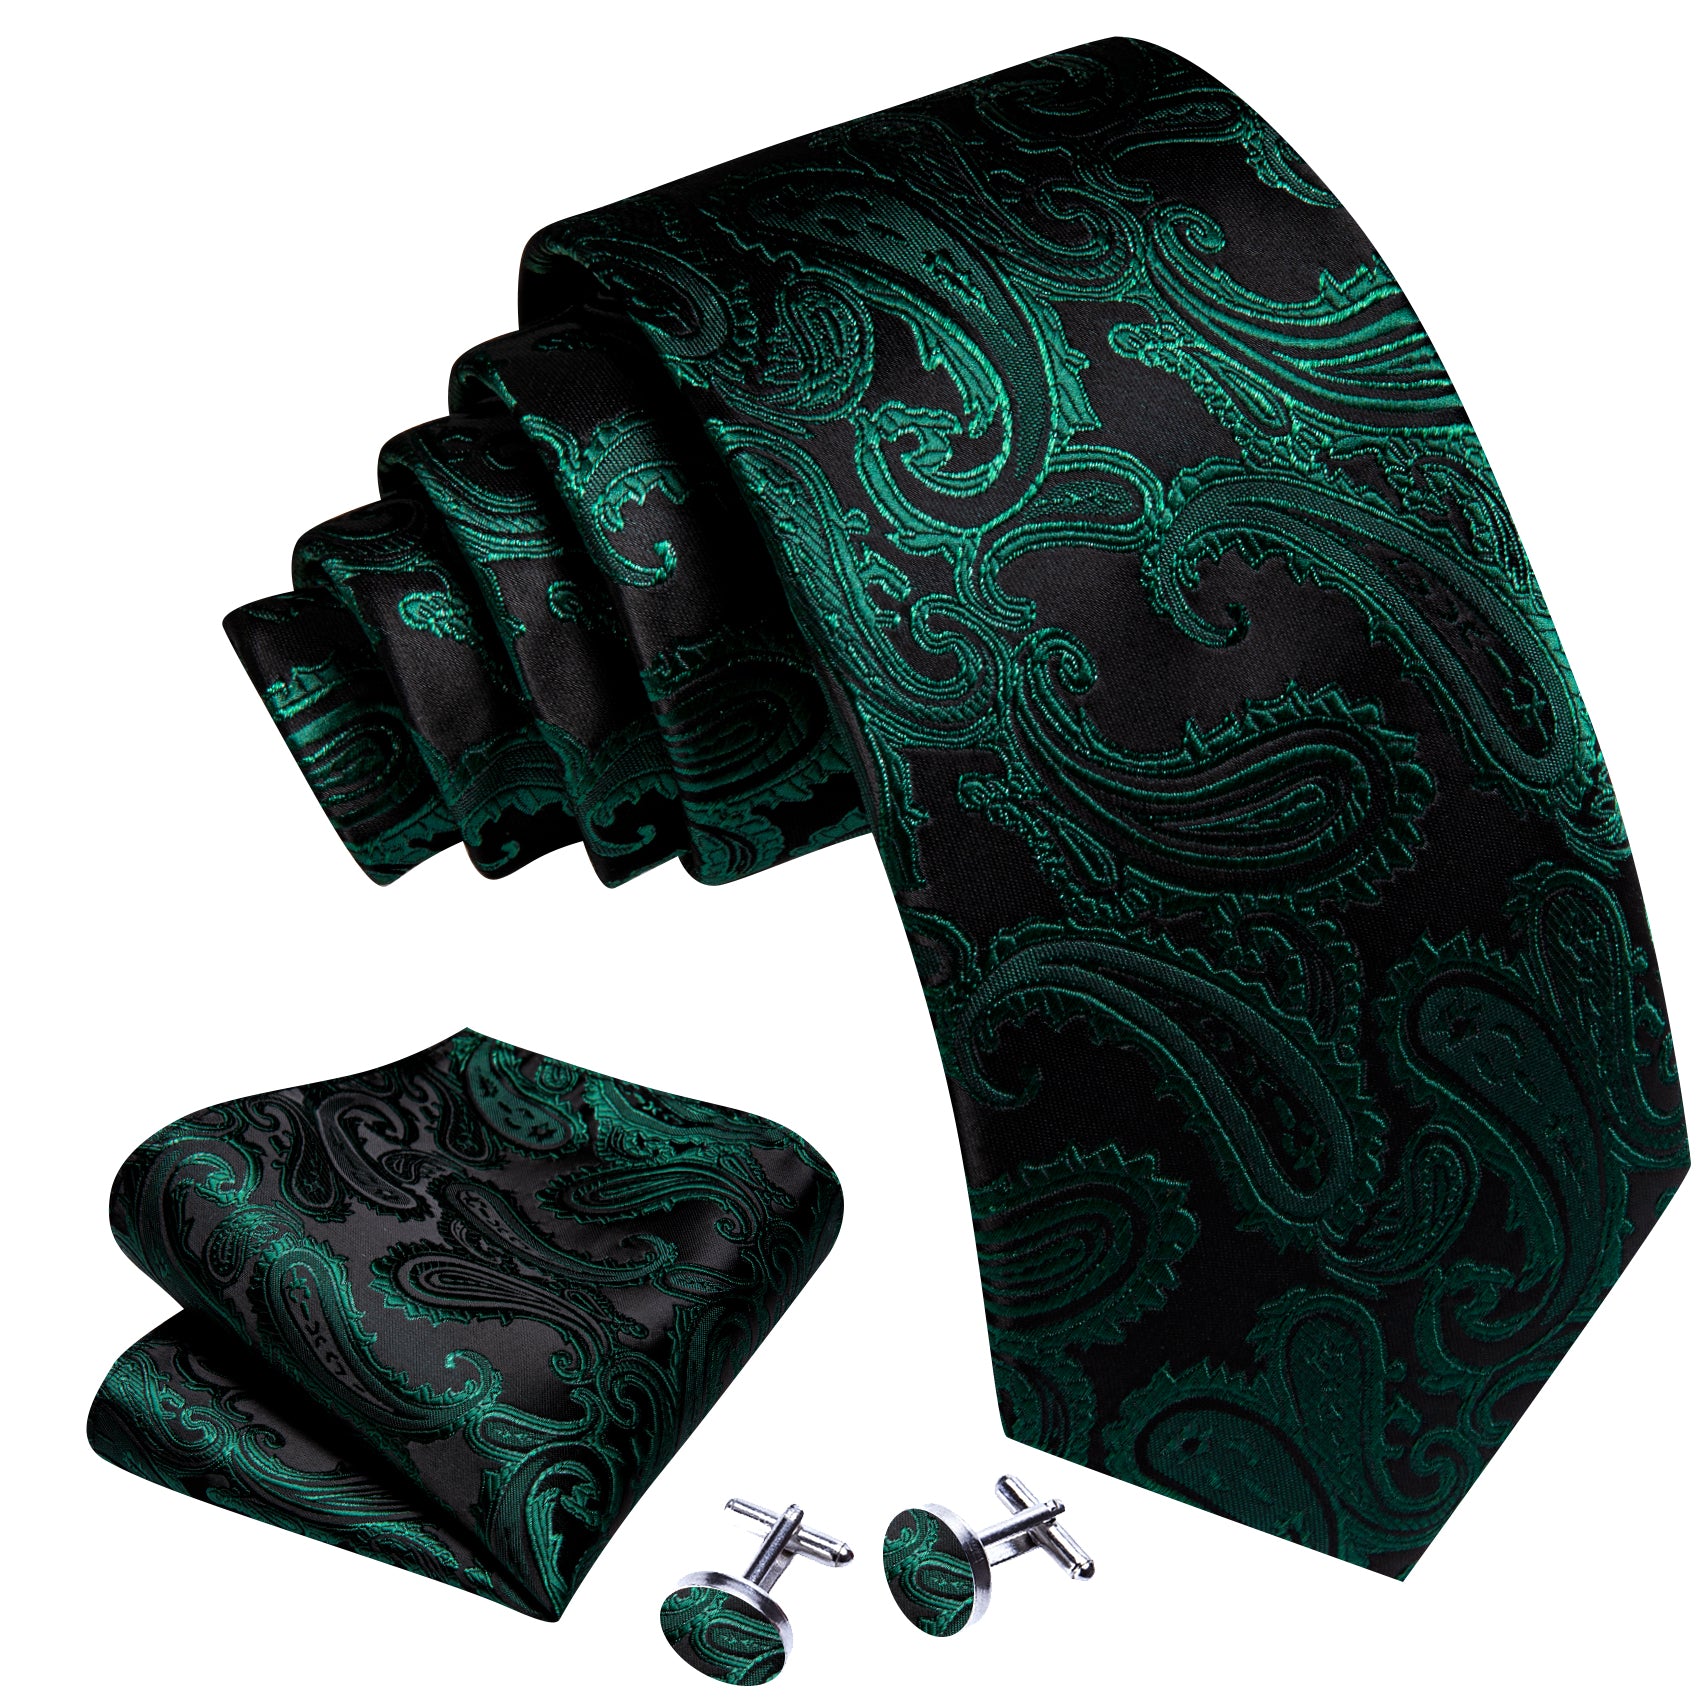 Barry Wang Dark Green Paisley Silk Tie Handkerchief Cufflinks Set